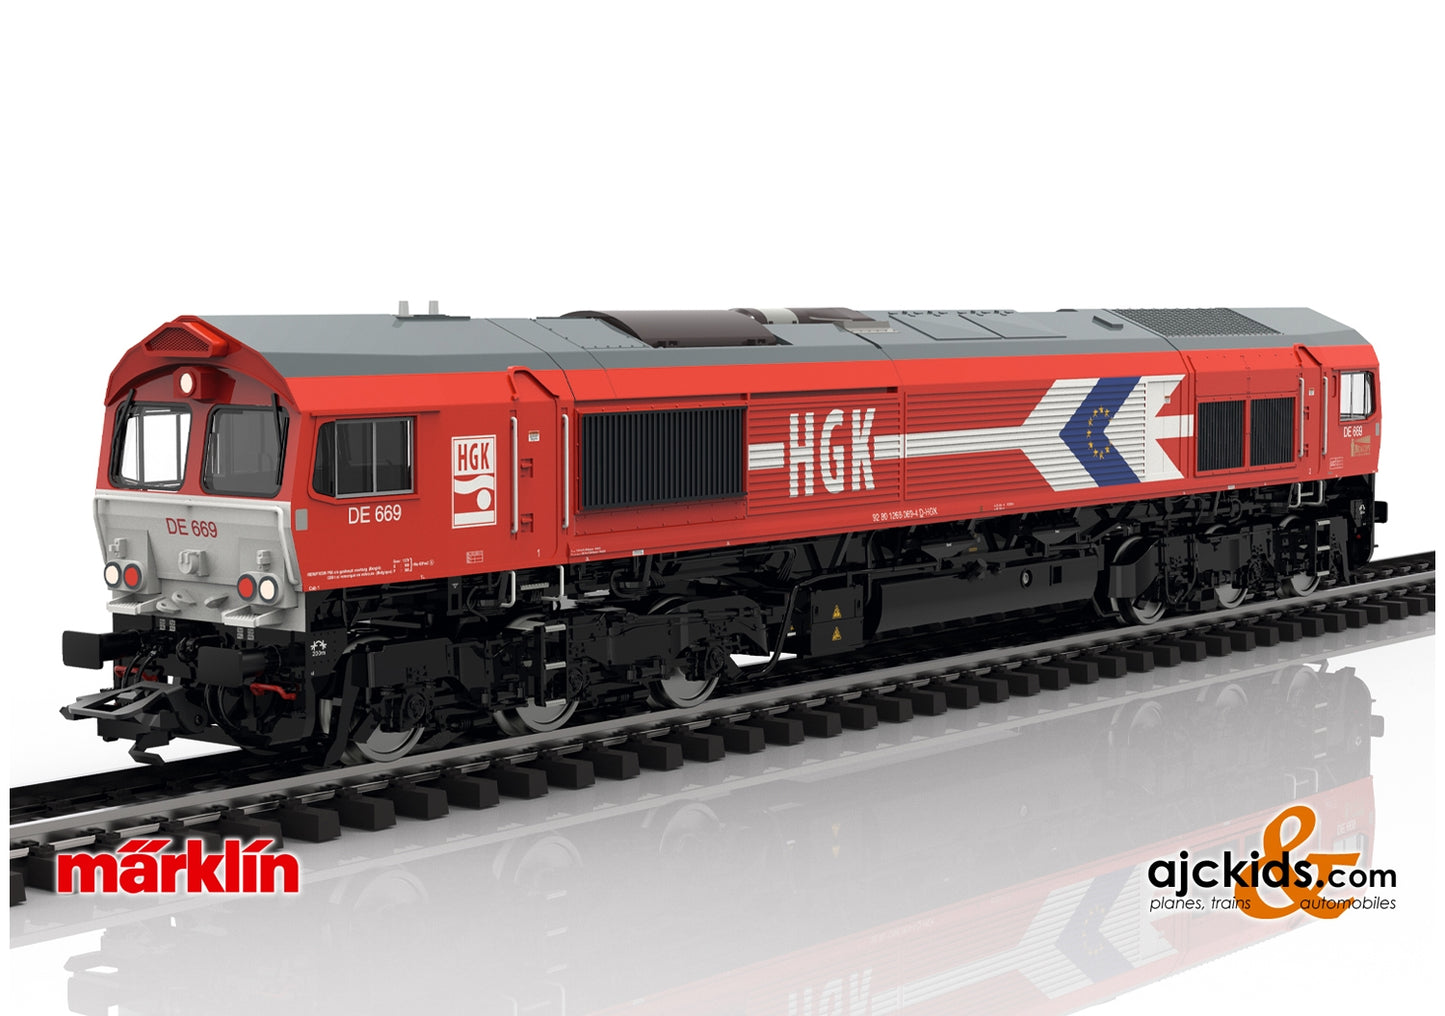 Marklin 39060 - Class 66 Diesel Locomotive HGK